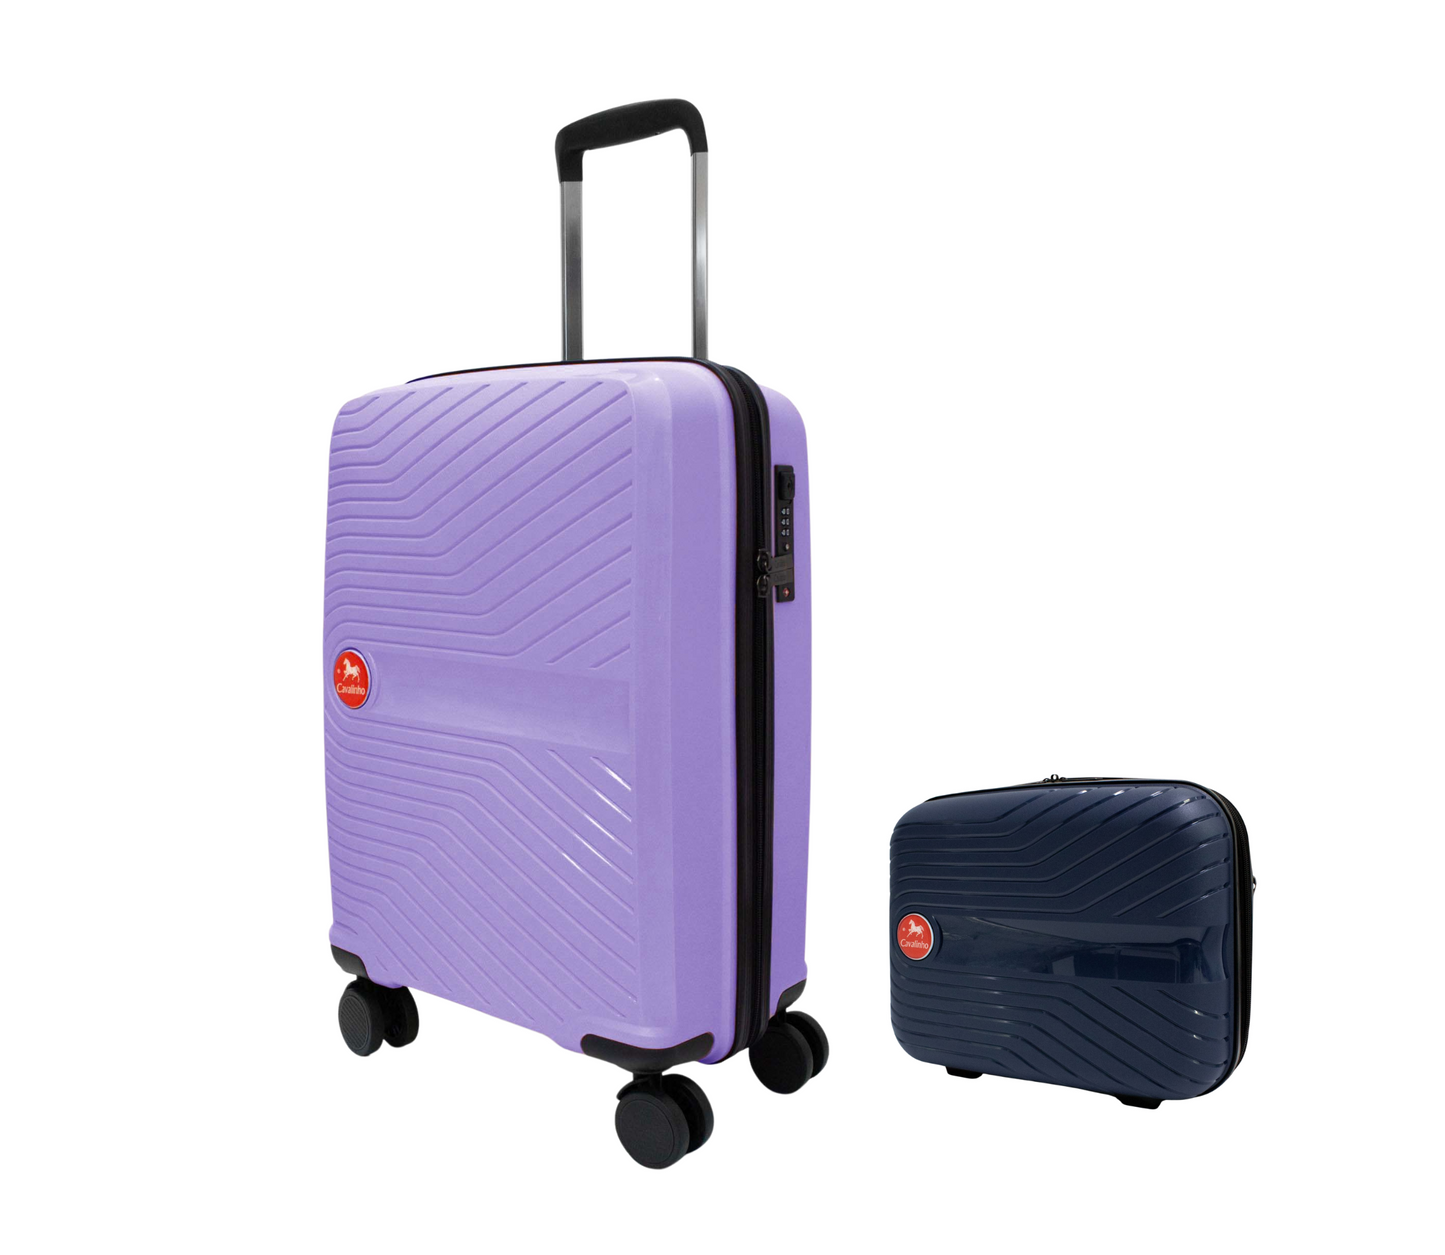 Cavalinho Canada & USA Colorful 2 Piece Luggage Set (15" & 19") - Navy Lilac - 68020004.0339.S1519._3